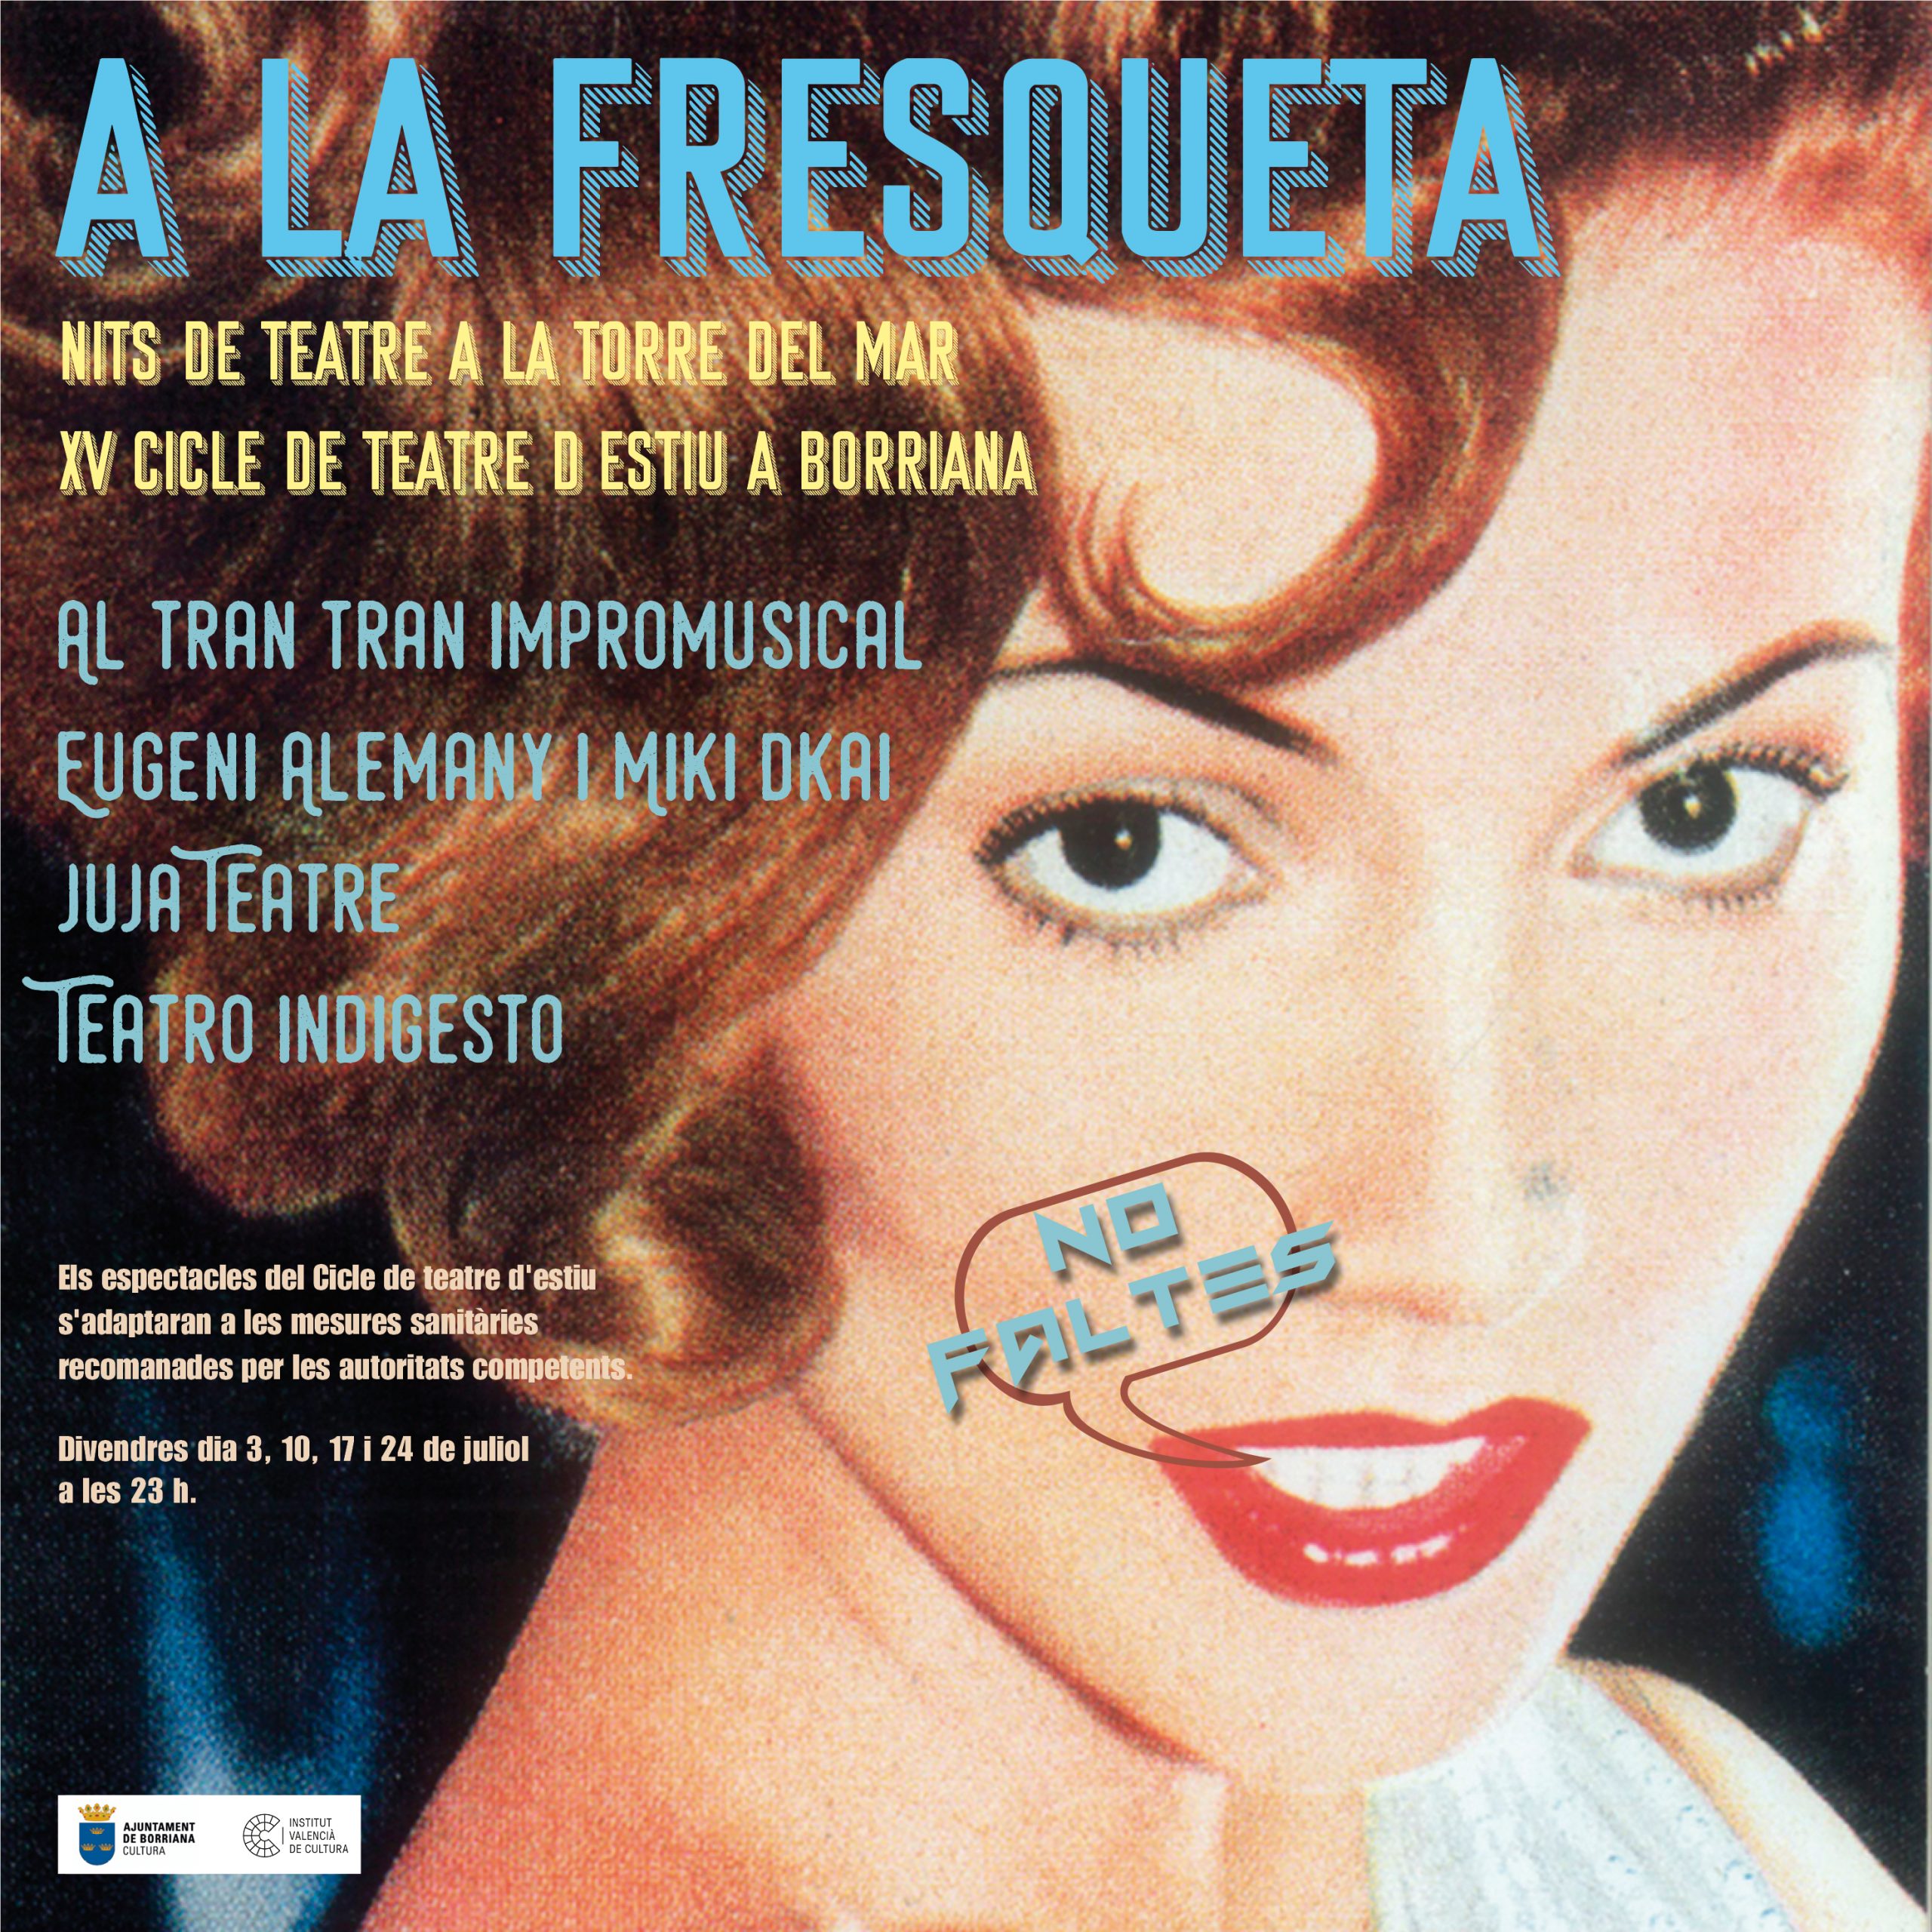 El Ciclo de teatro ‘A la Fresqueta’ vuelve de nuevo con el mes de julio a Burriana